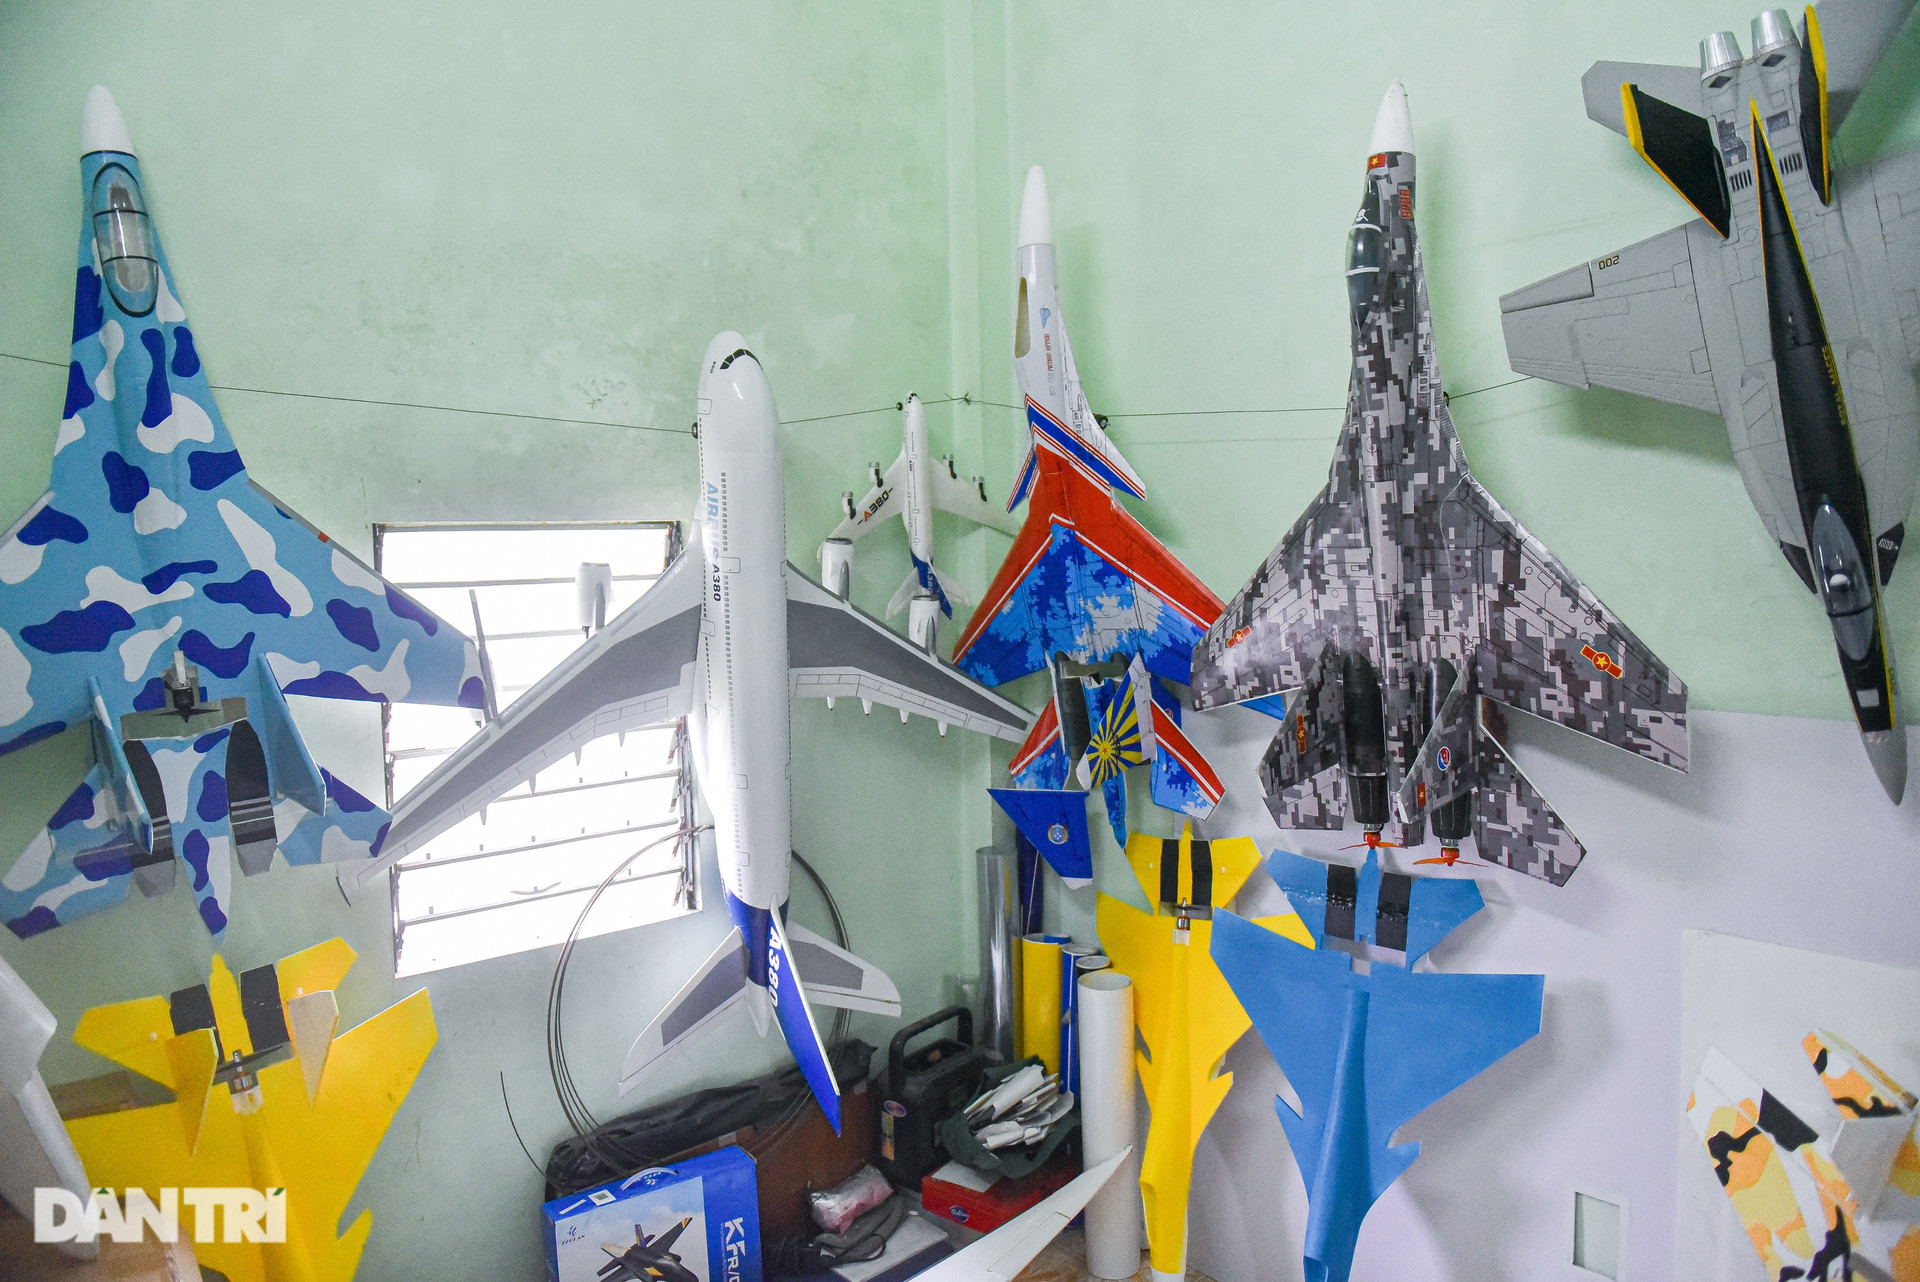 Bộ sưu tập mô hình máy bay khủng của chàng trai 10x ở Hà Nội gây sốt mạng - 6